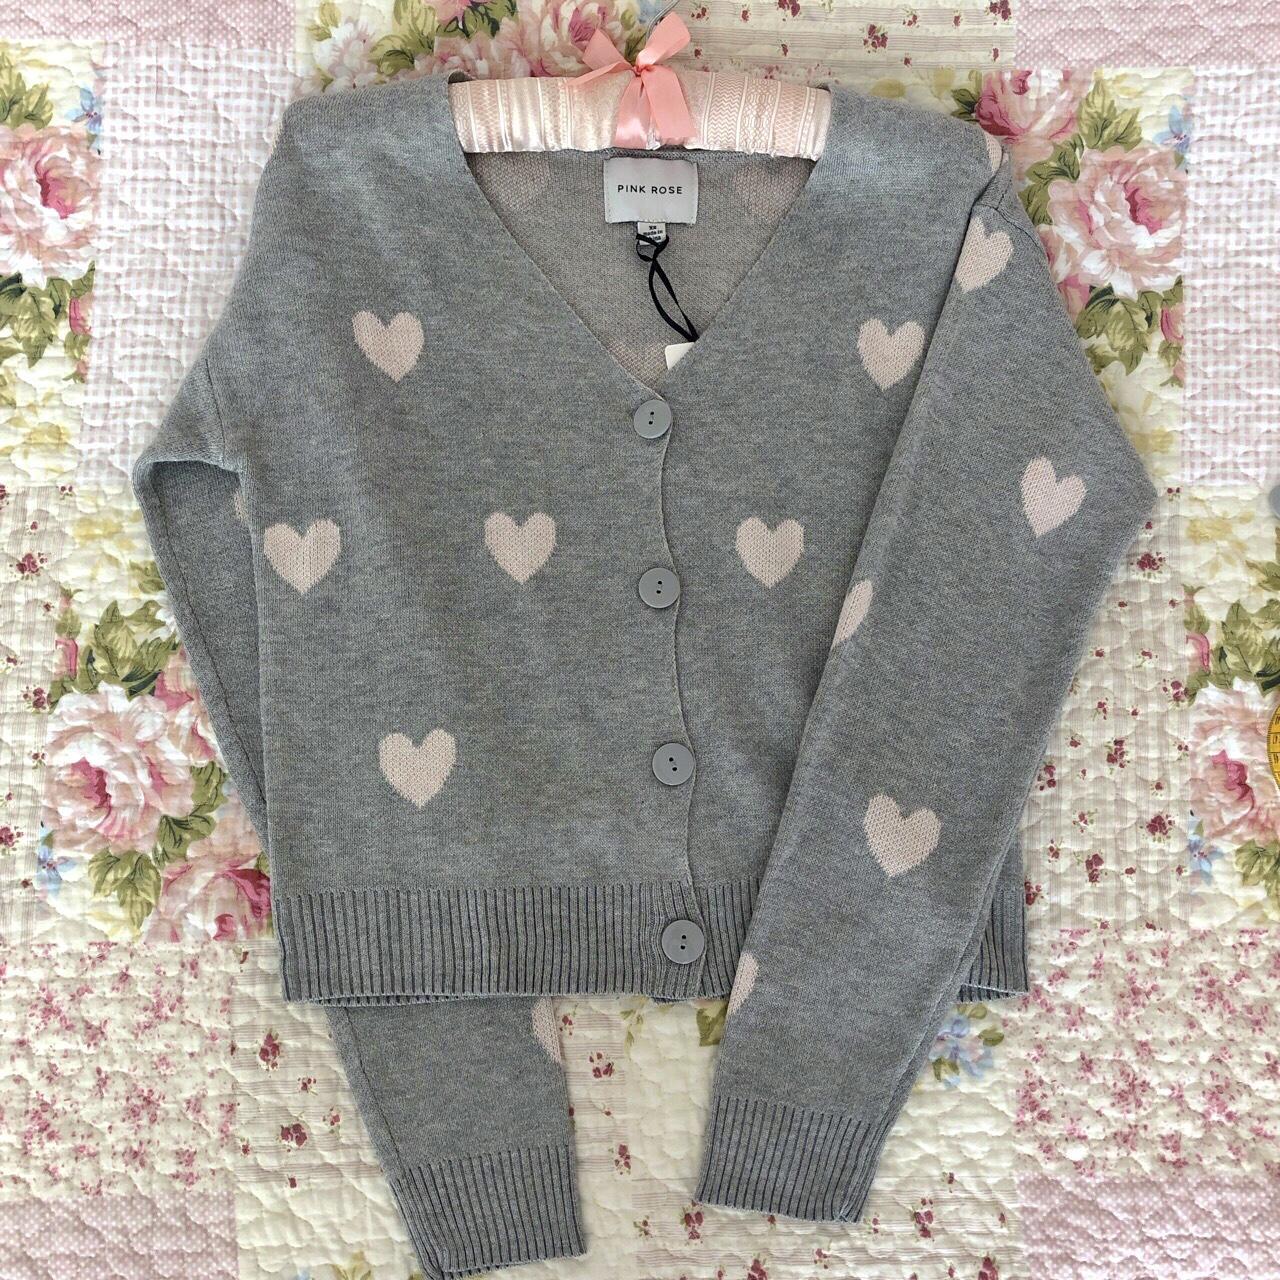 💕💖 Kawaii Grey and Pink Heart Cardigan 💖💕 Adorable... - Depop